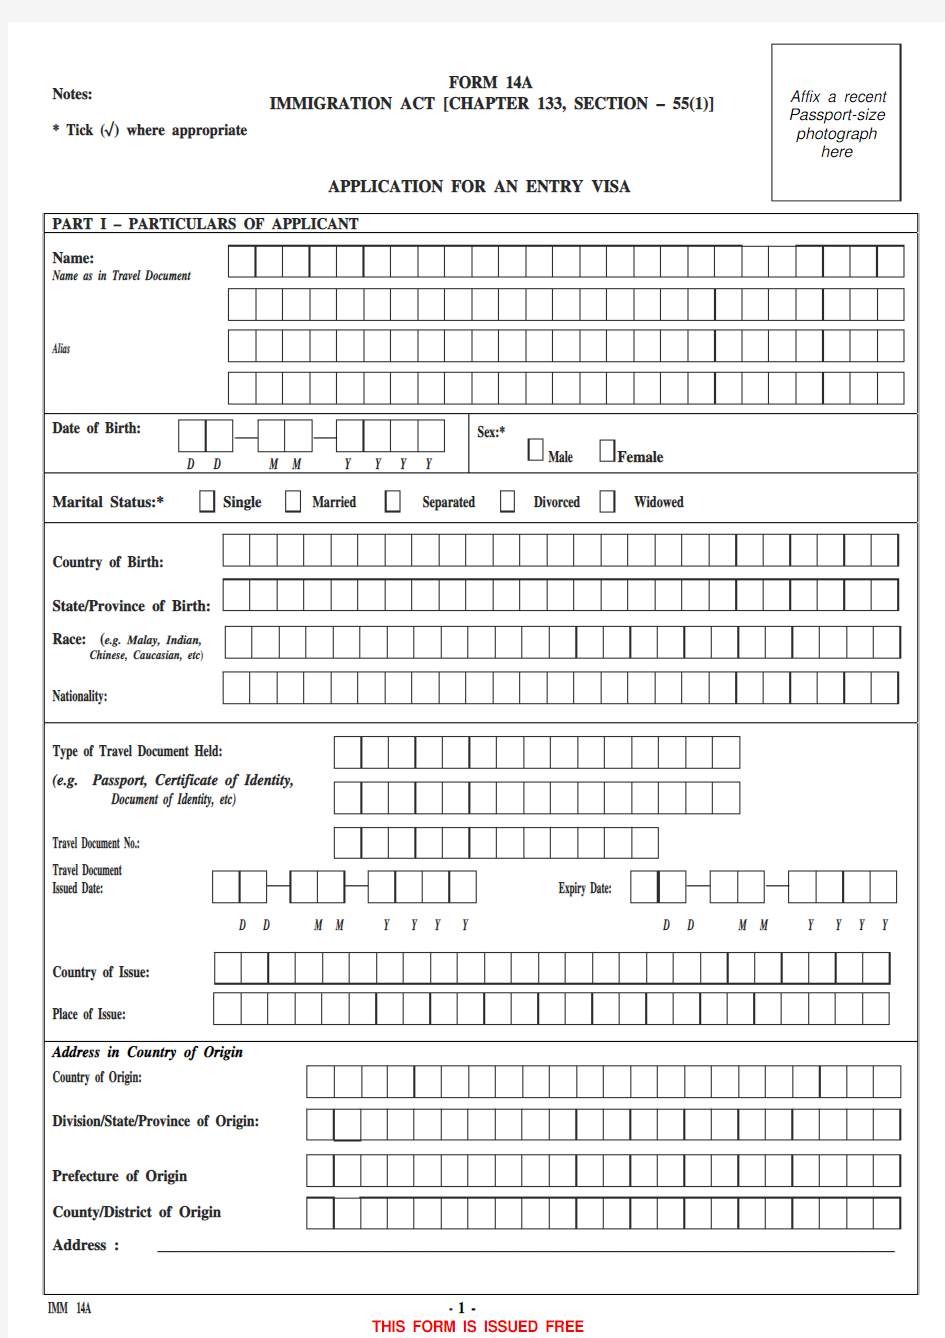 新加坡签证申请表(英文版)Form 14A